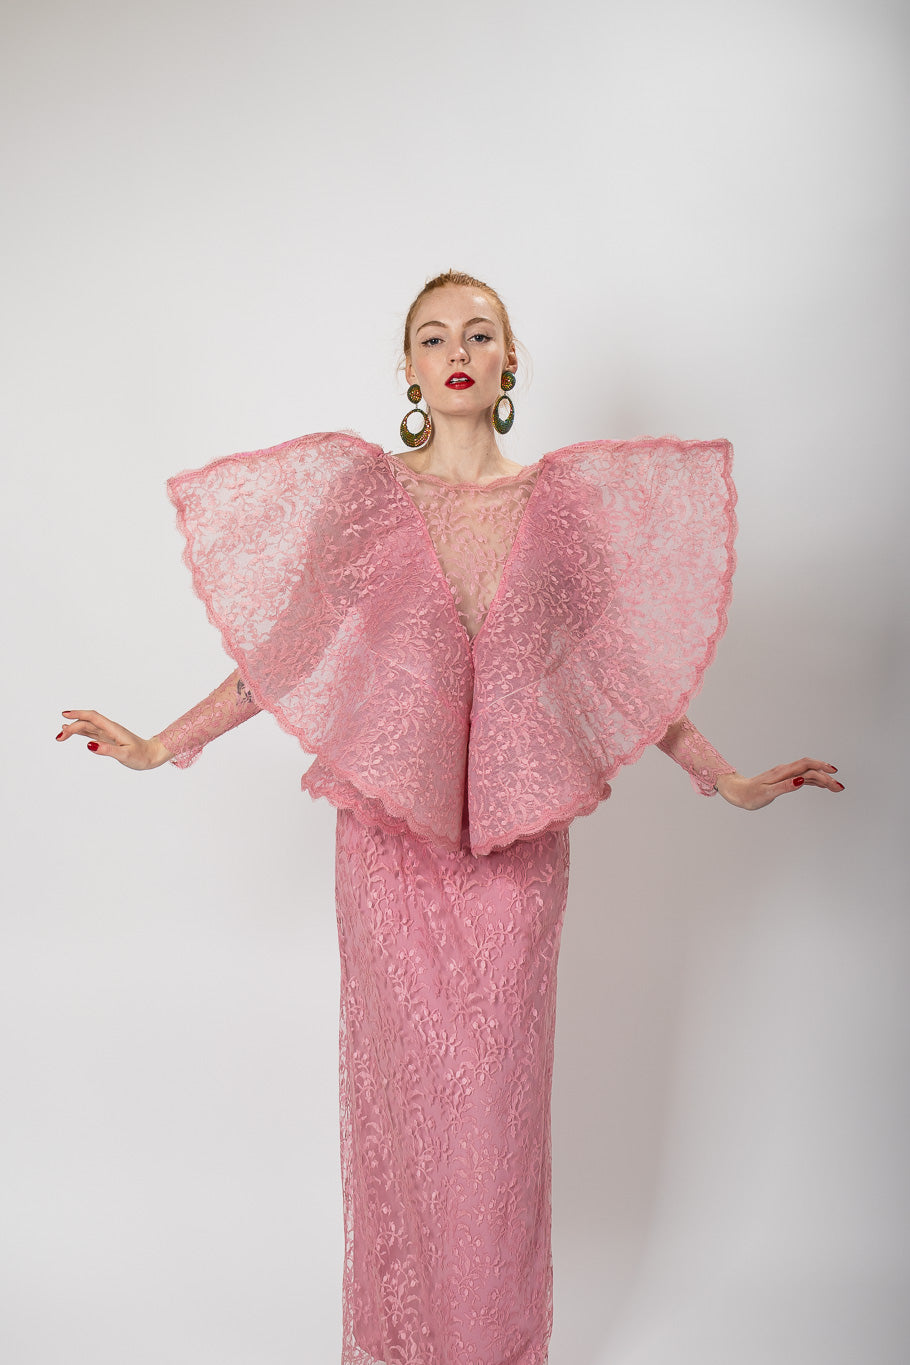 Gown by Pierre Cardin 1987 on Model. @recessla